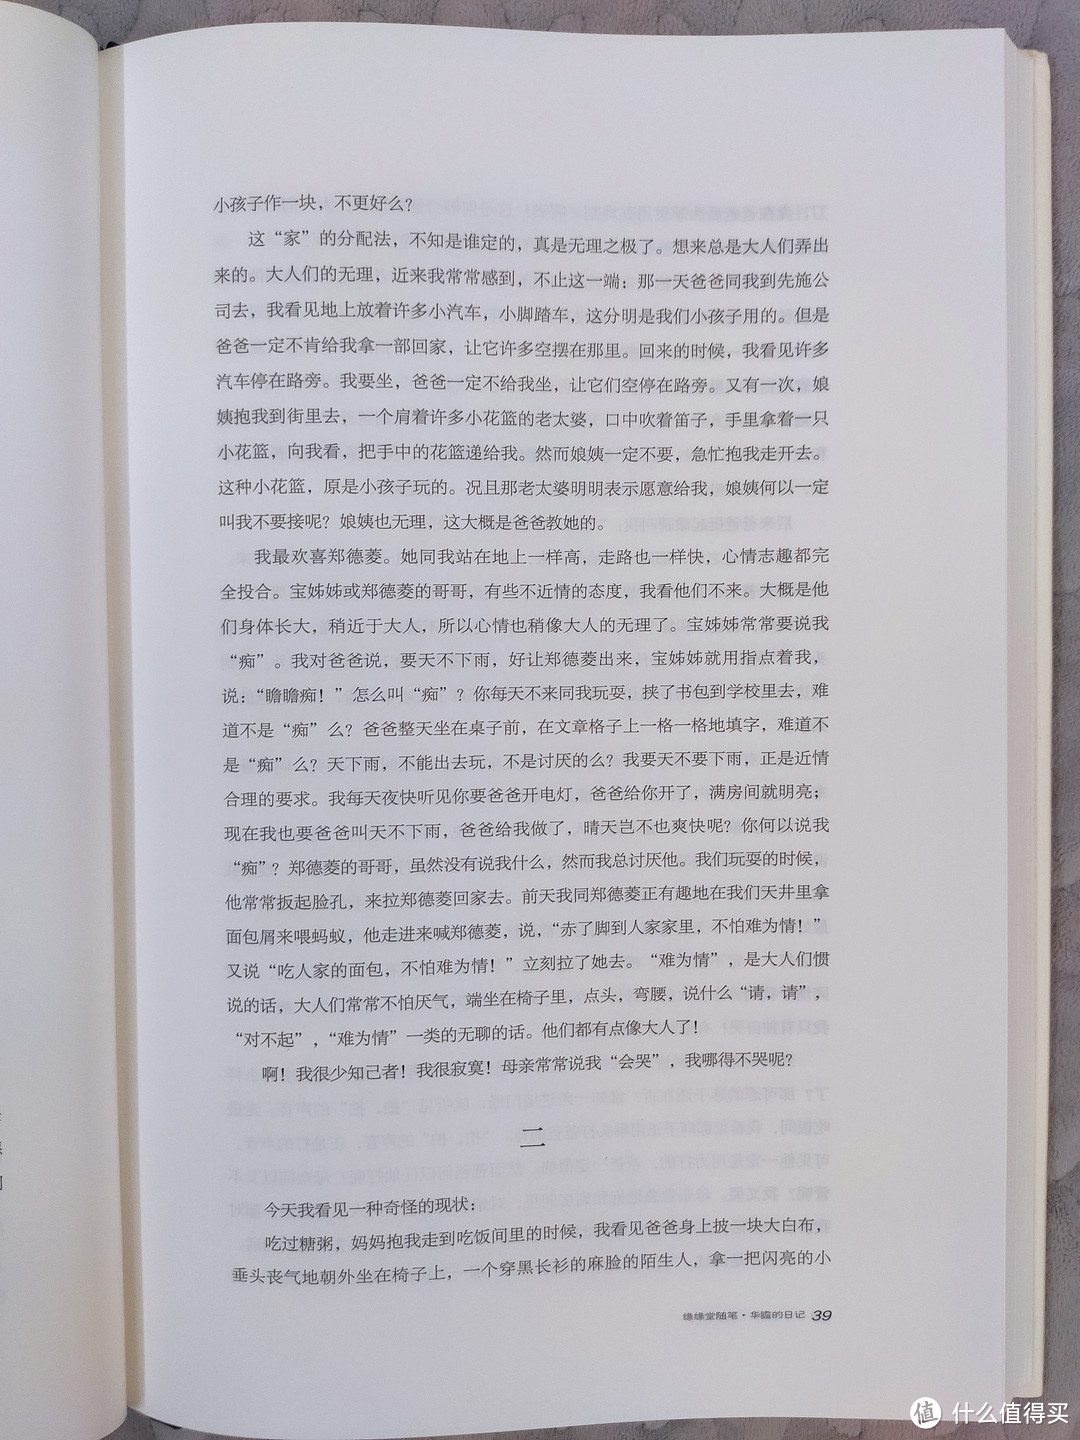 海豚出版社精装五十册《丰子恺全集》简评